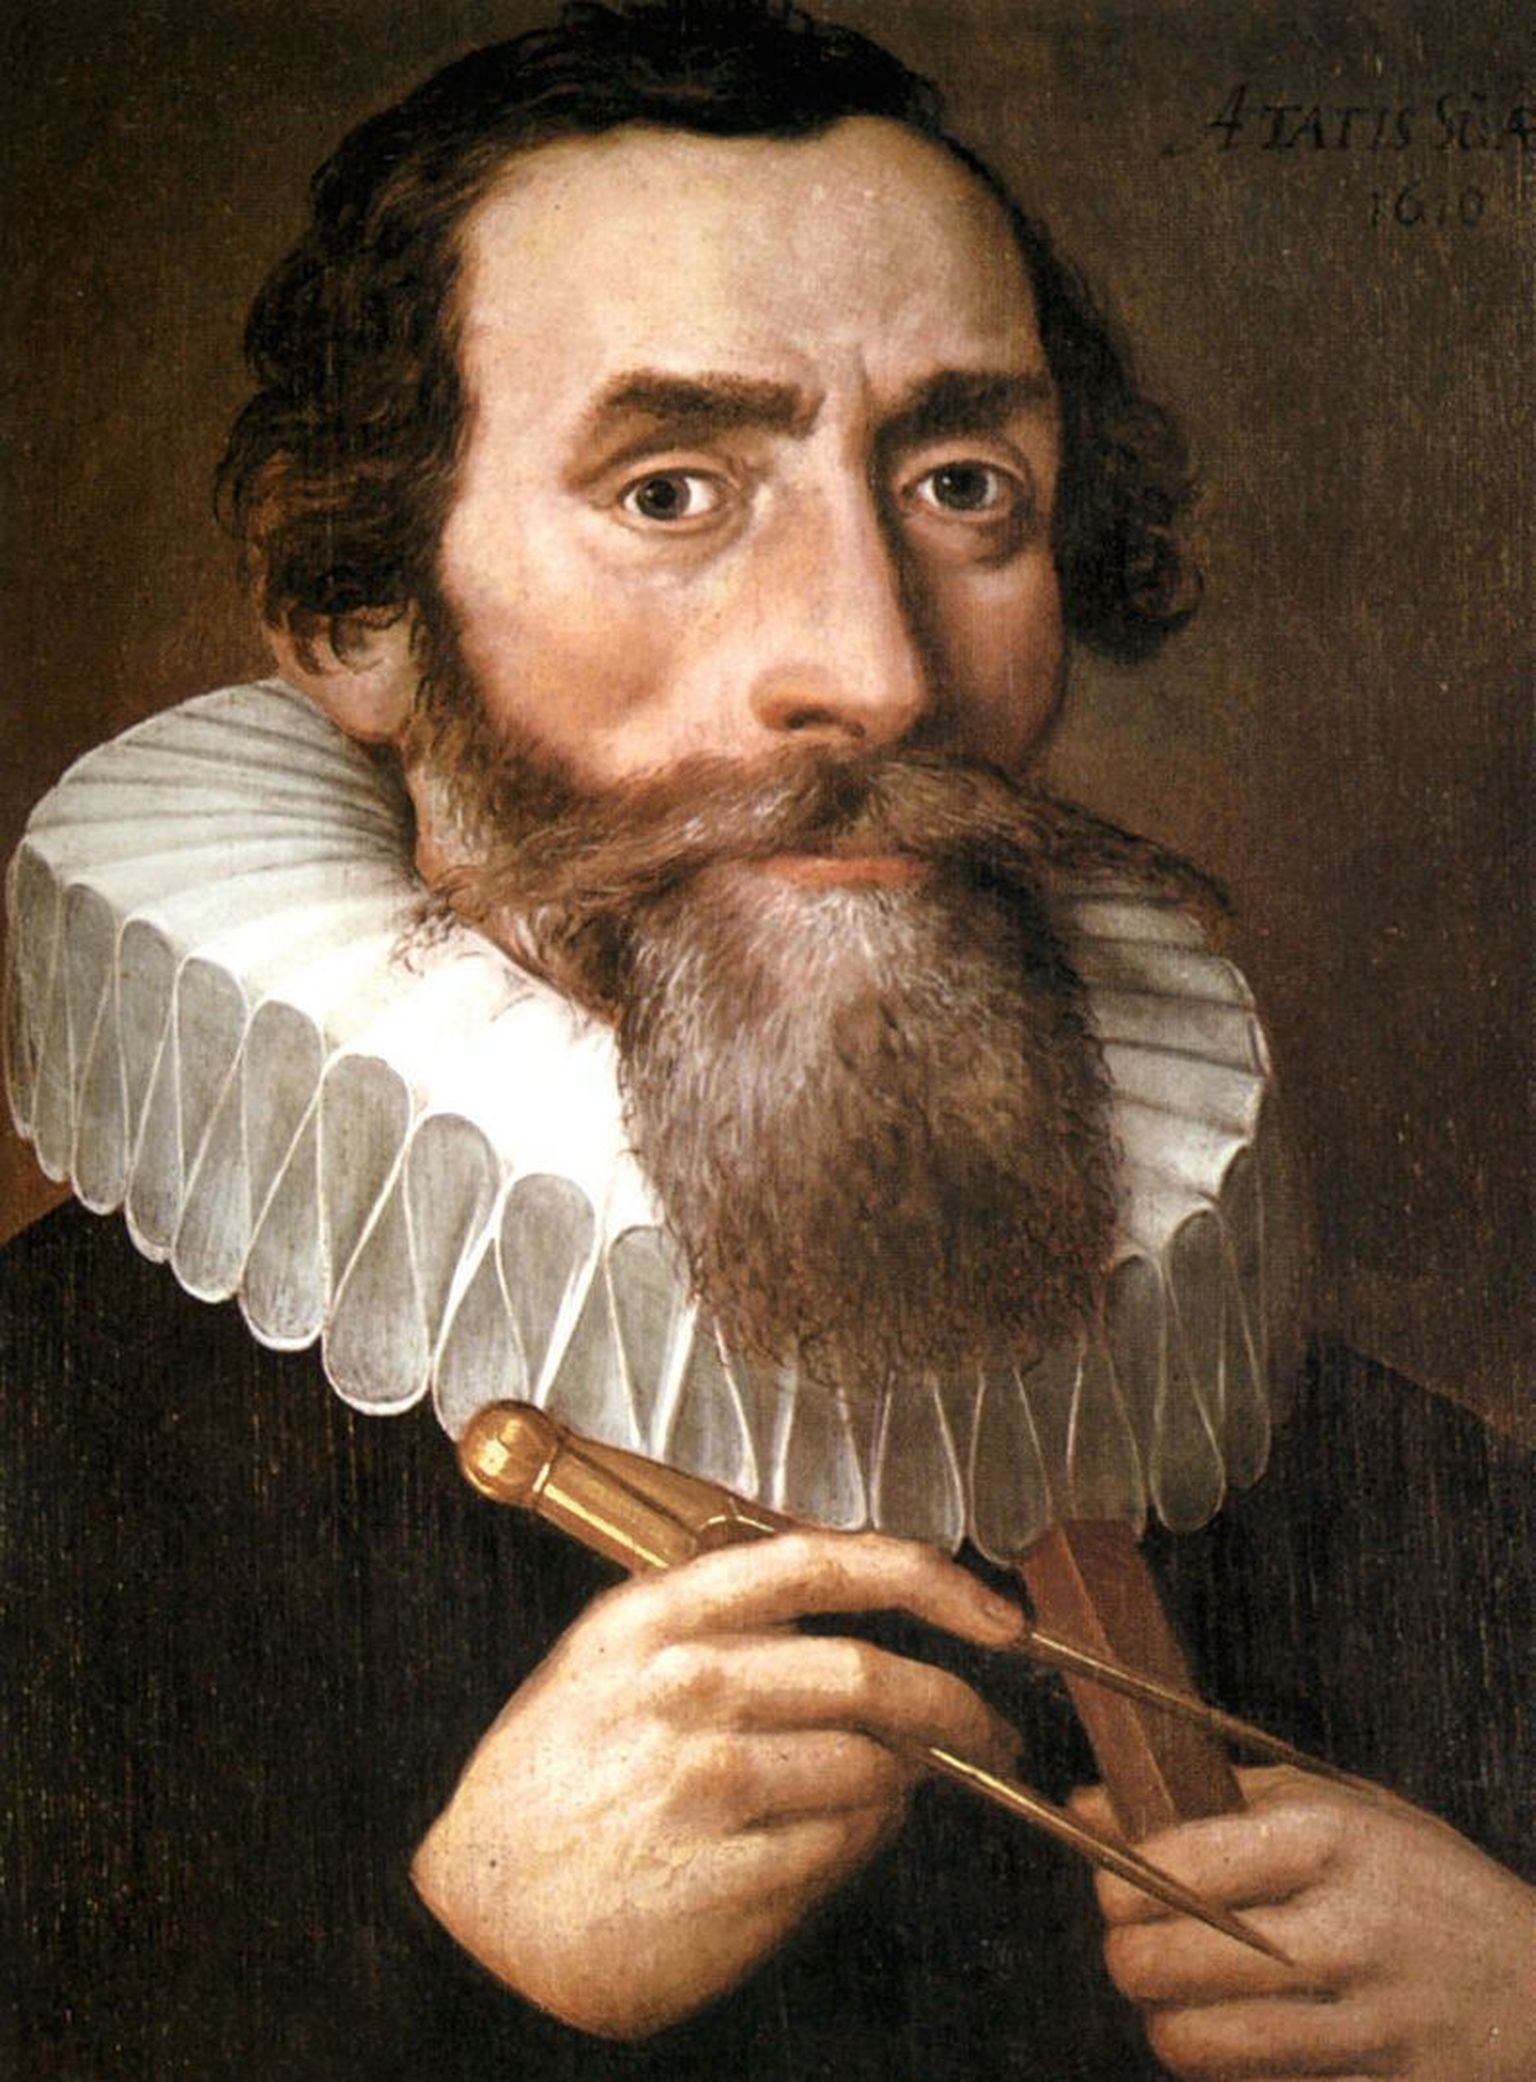 Johannes Keplerit kujutav maal aastast 1610